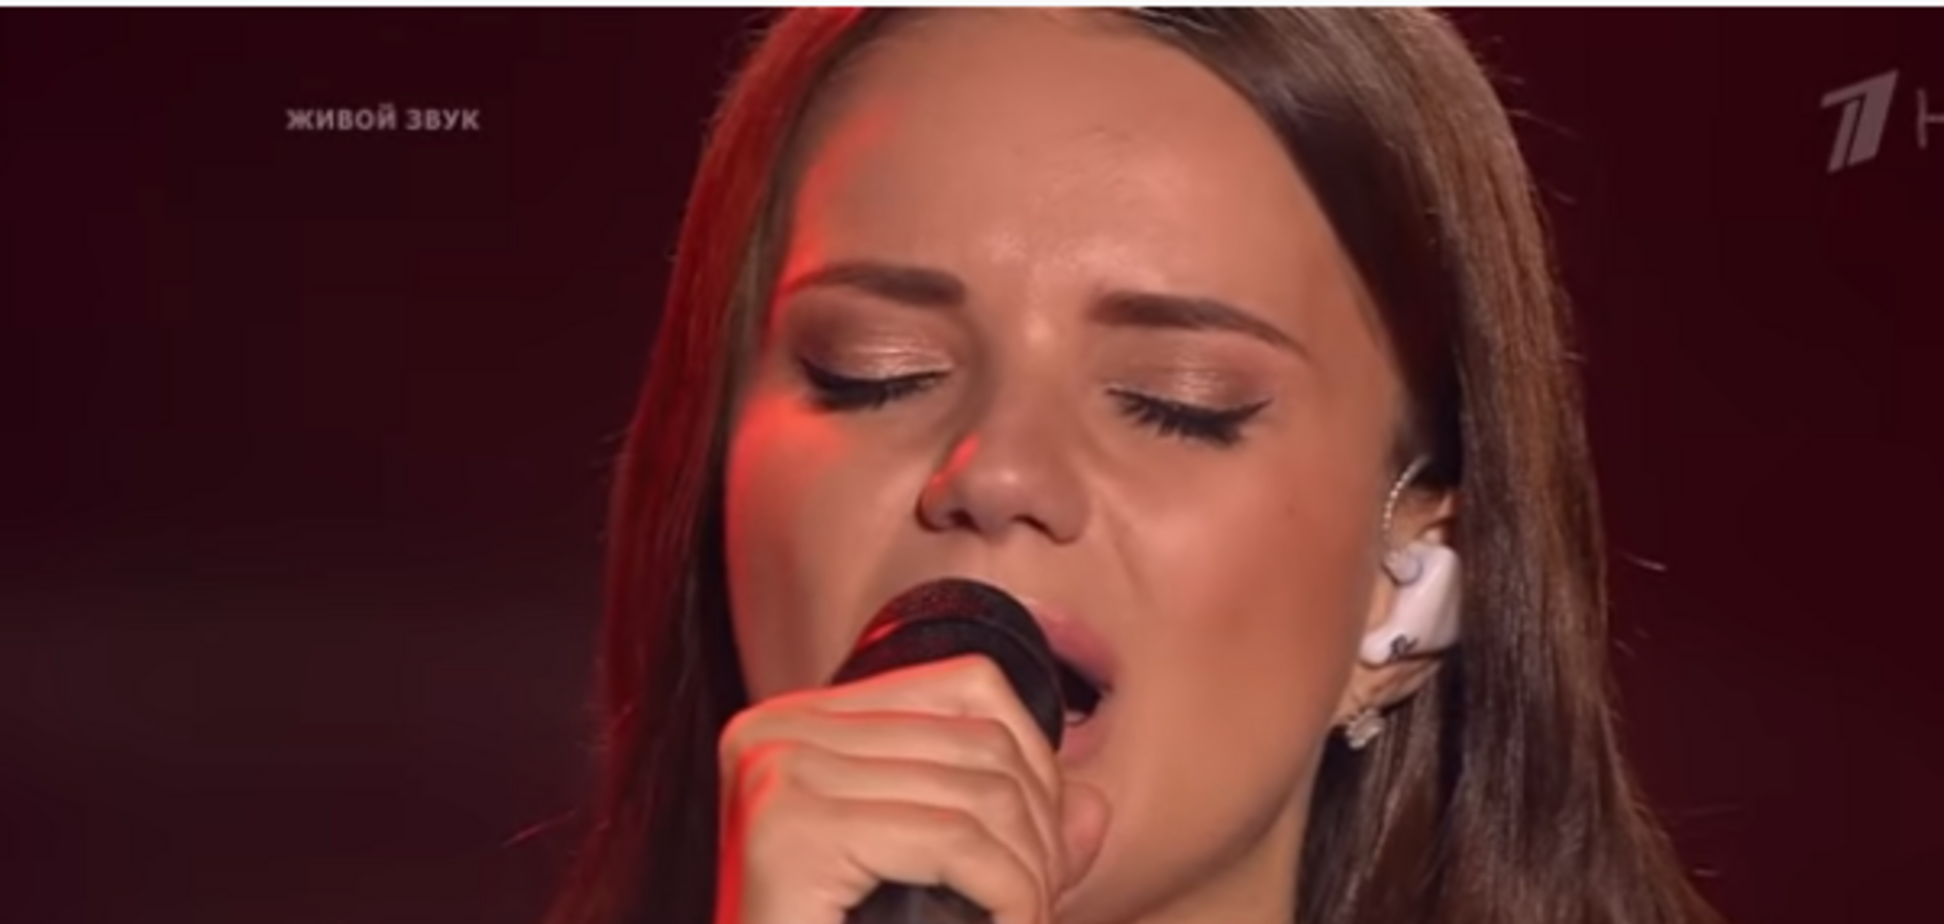 'Как исполнено!' Украинская песня в эфире росТВ вызвала шквал эмоций в сети